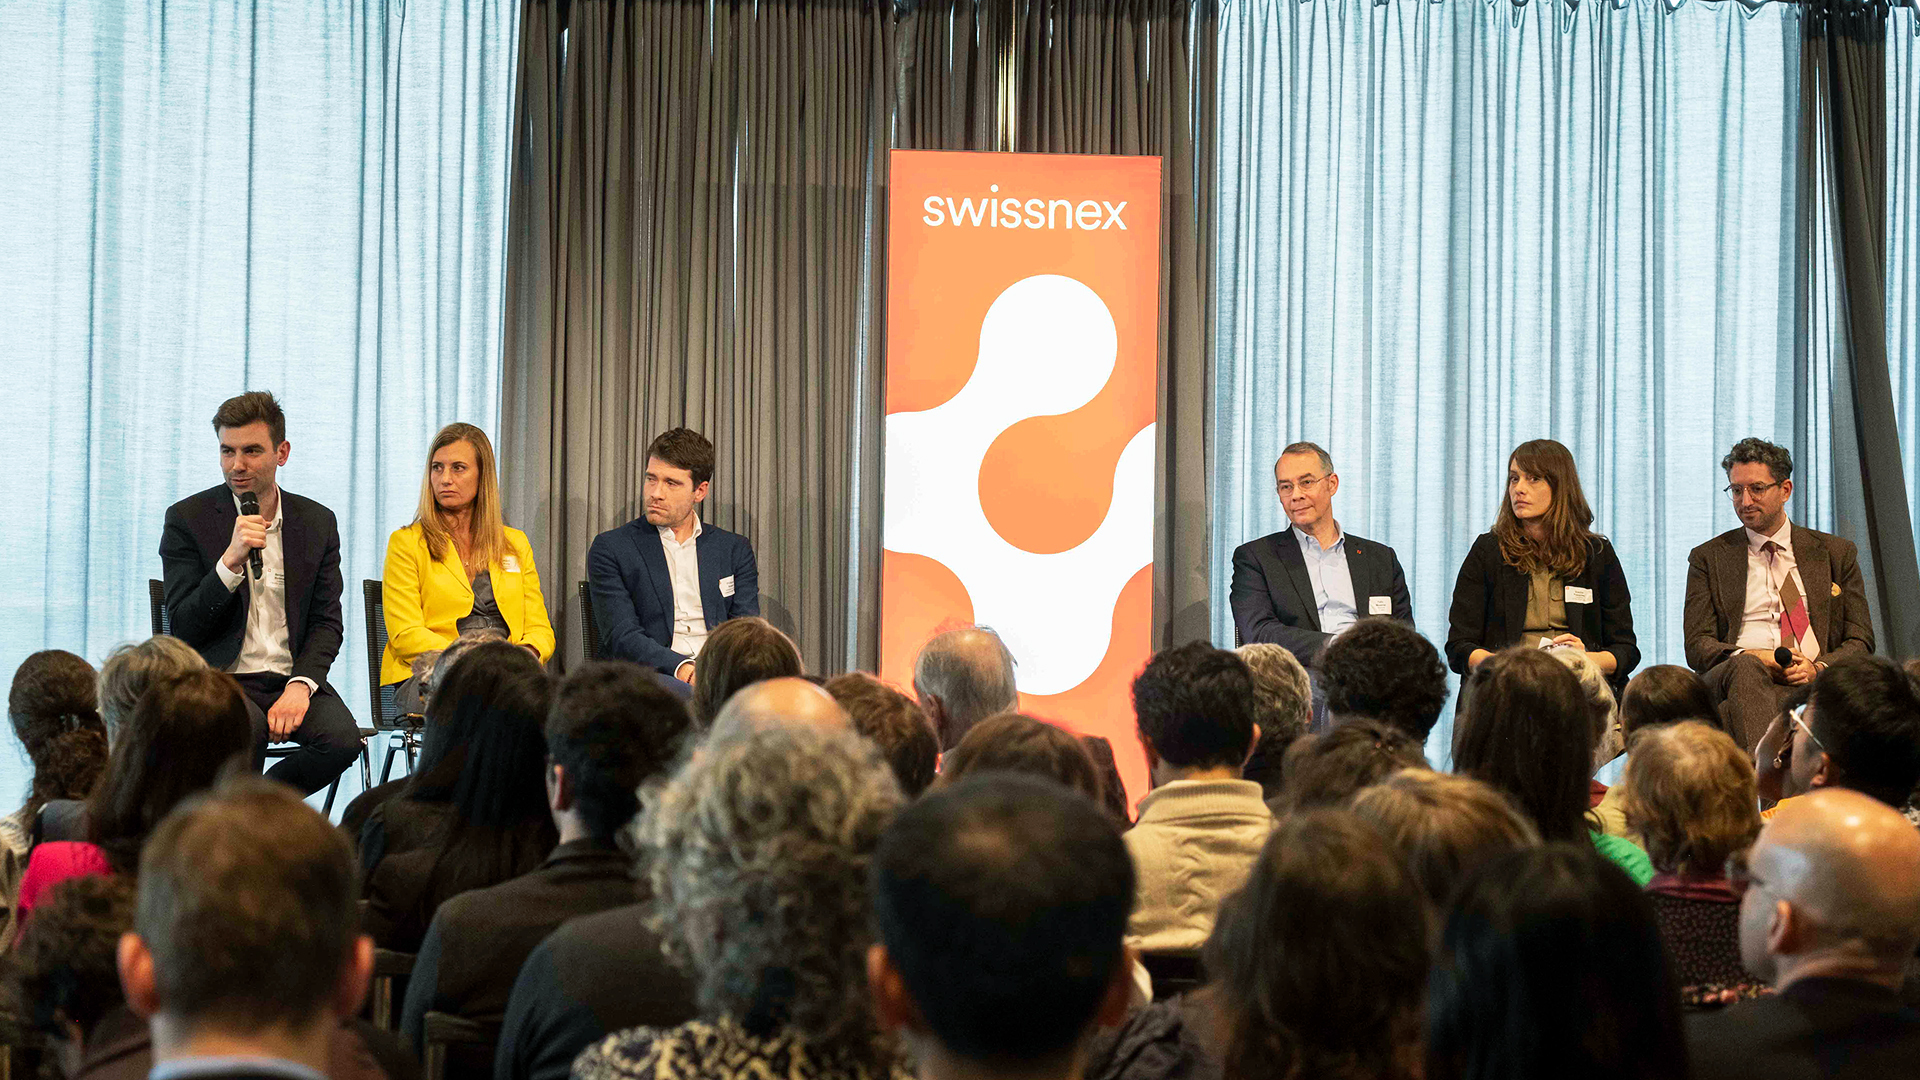 Six CEO de Swissnex sont assis sur la scène autour d'une bannière rouge portant le logo de Swissnex. Les têtes du public sont visibles en bas, le fond de la scène est gris.